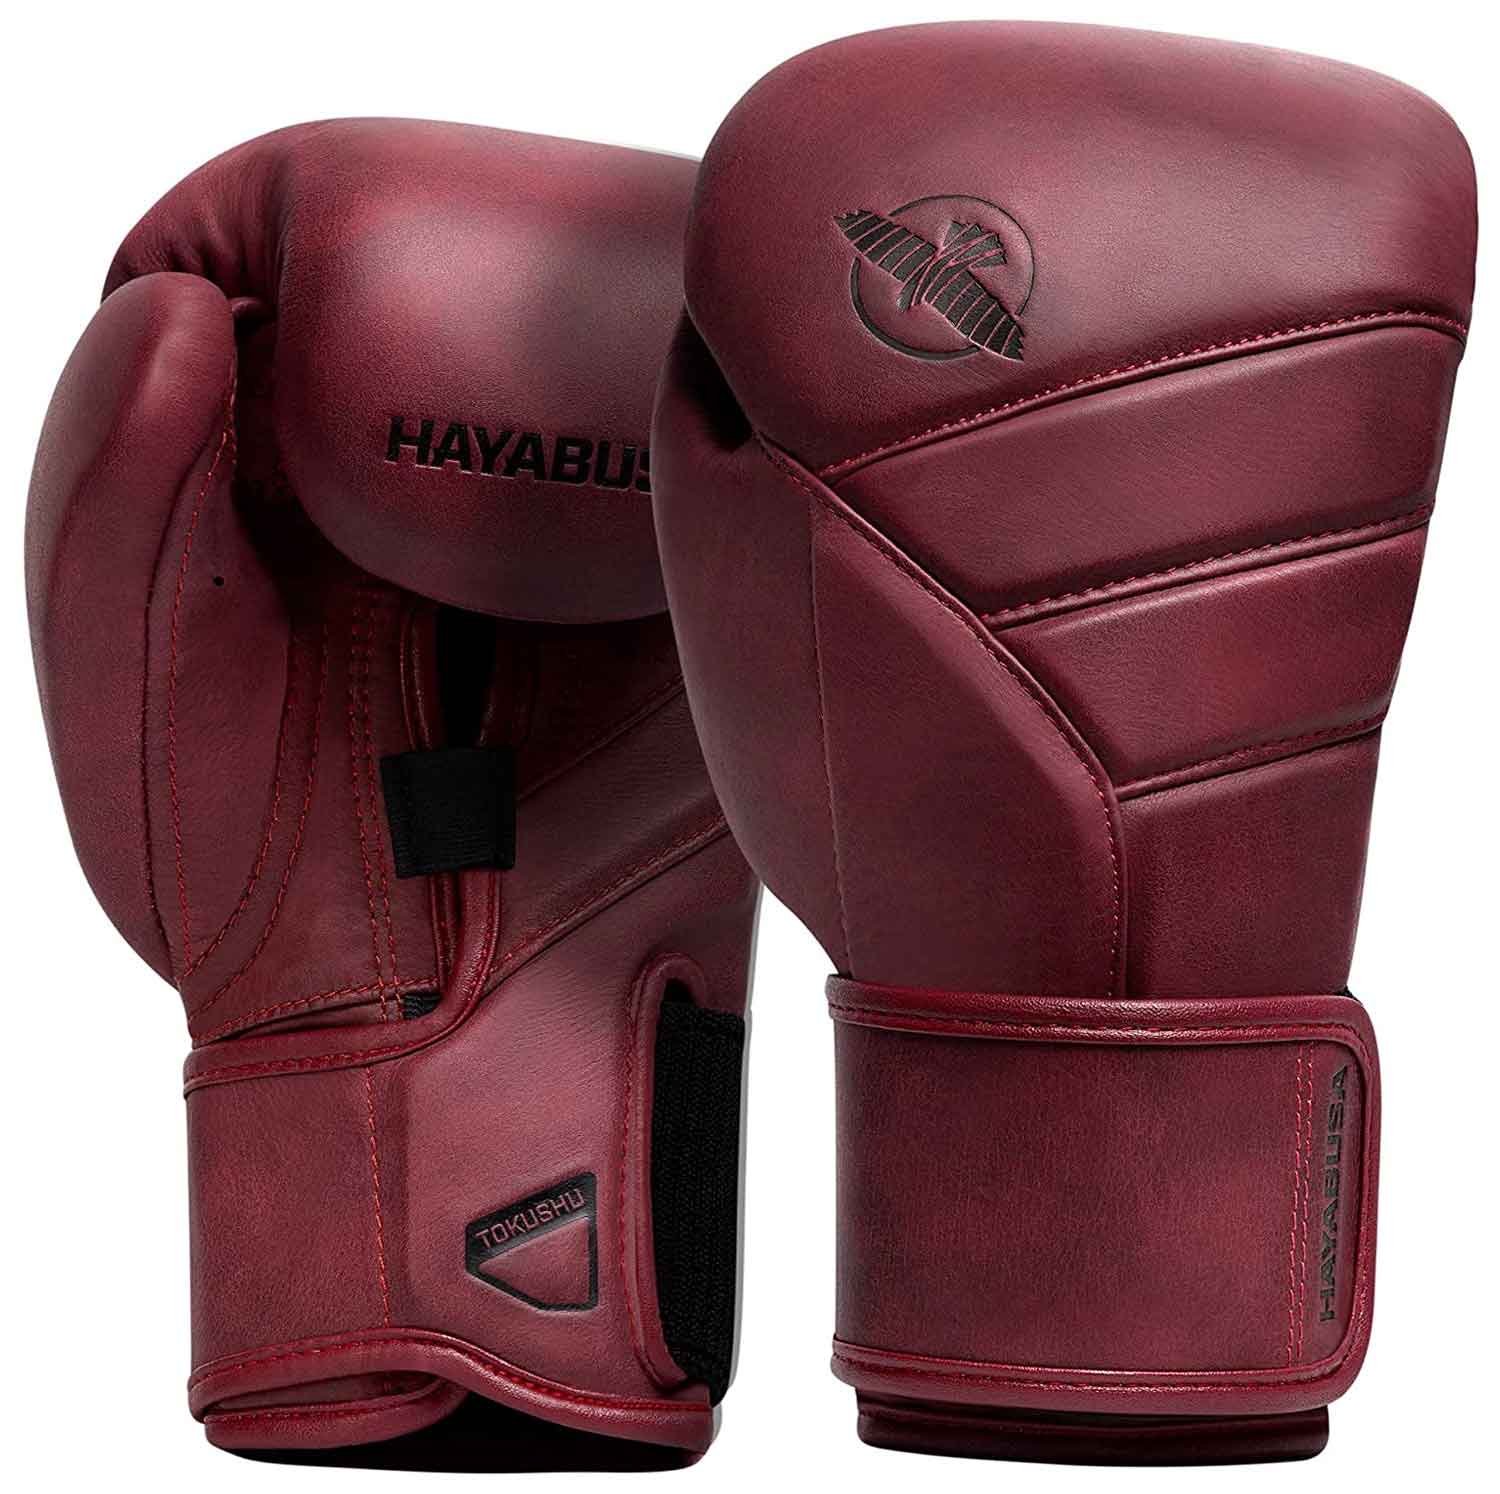 Hayabusa T3 LX Leather Boxing Training Gloves